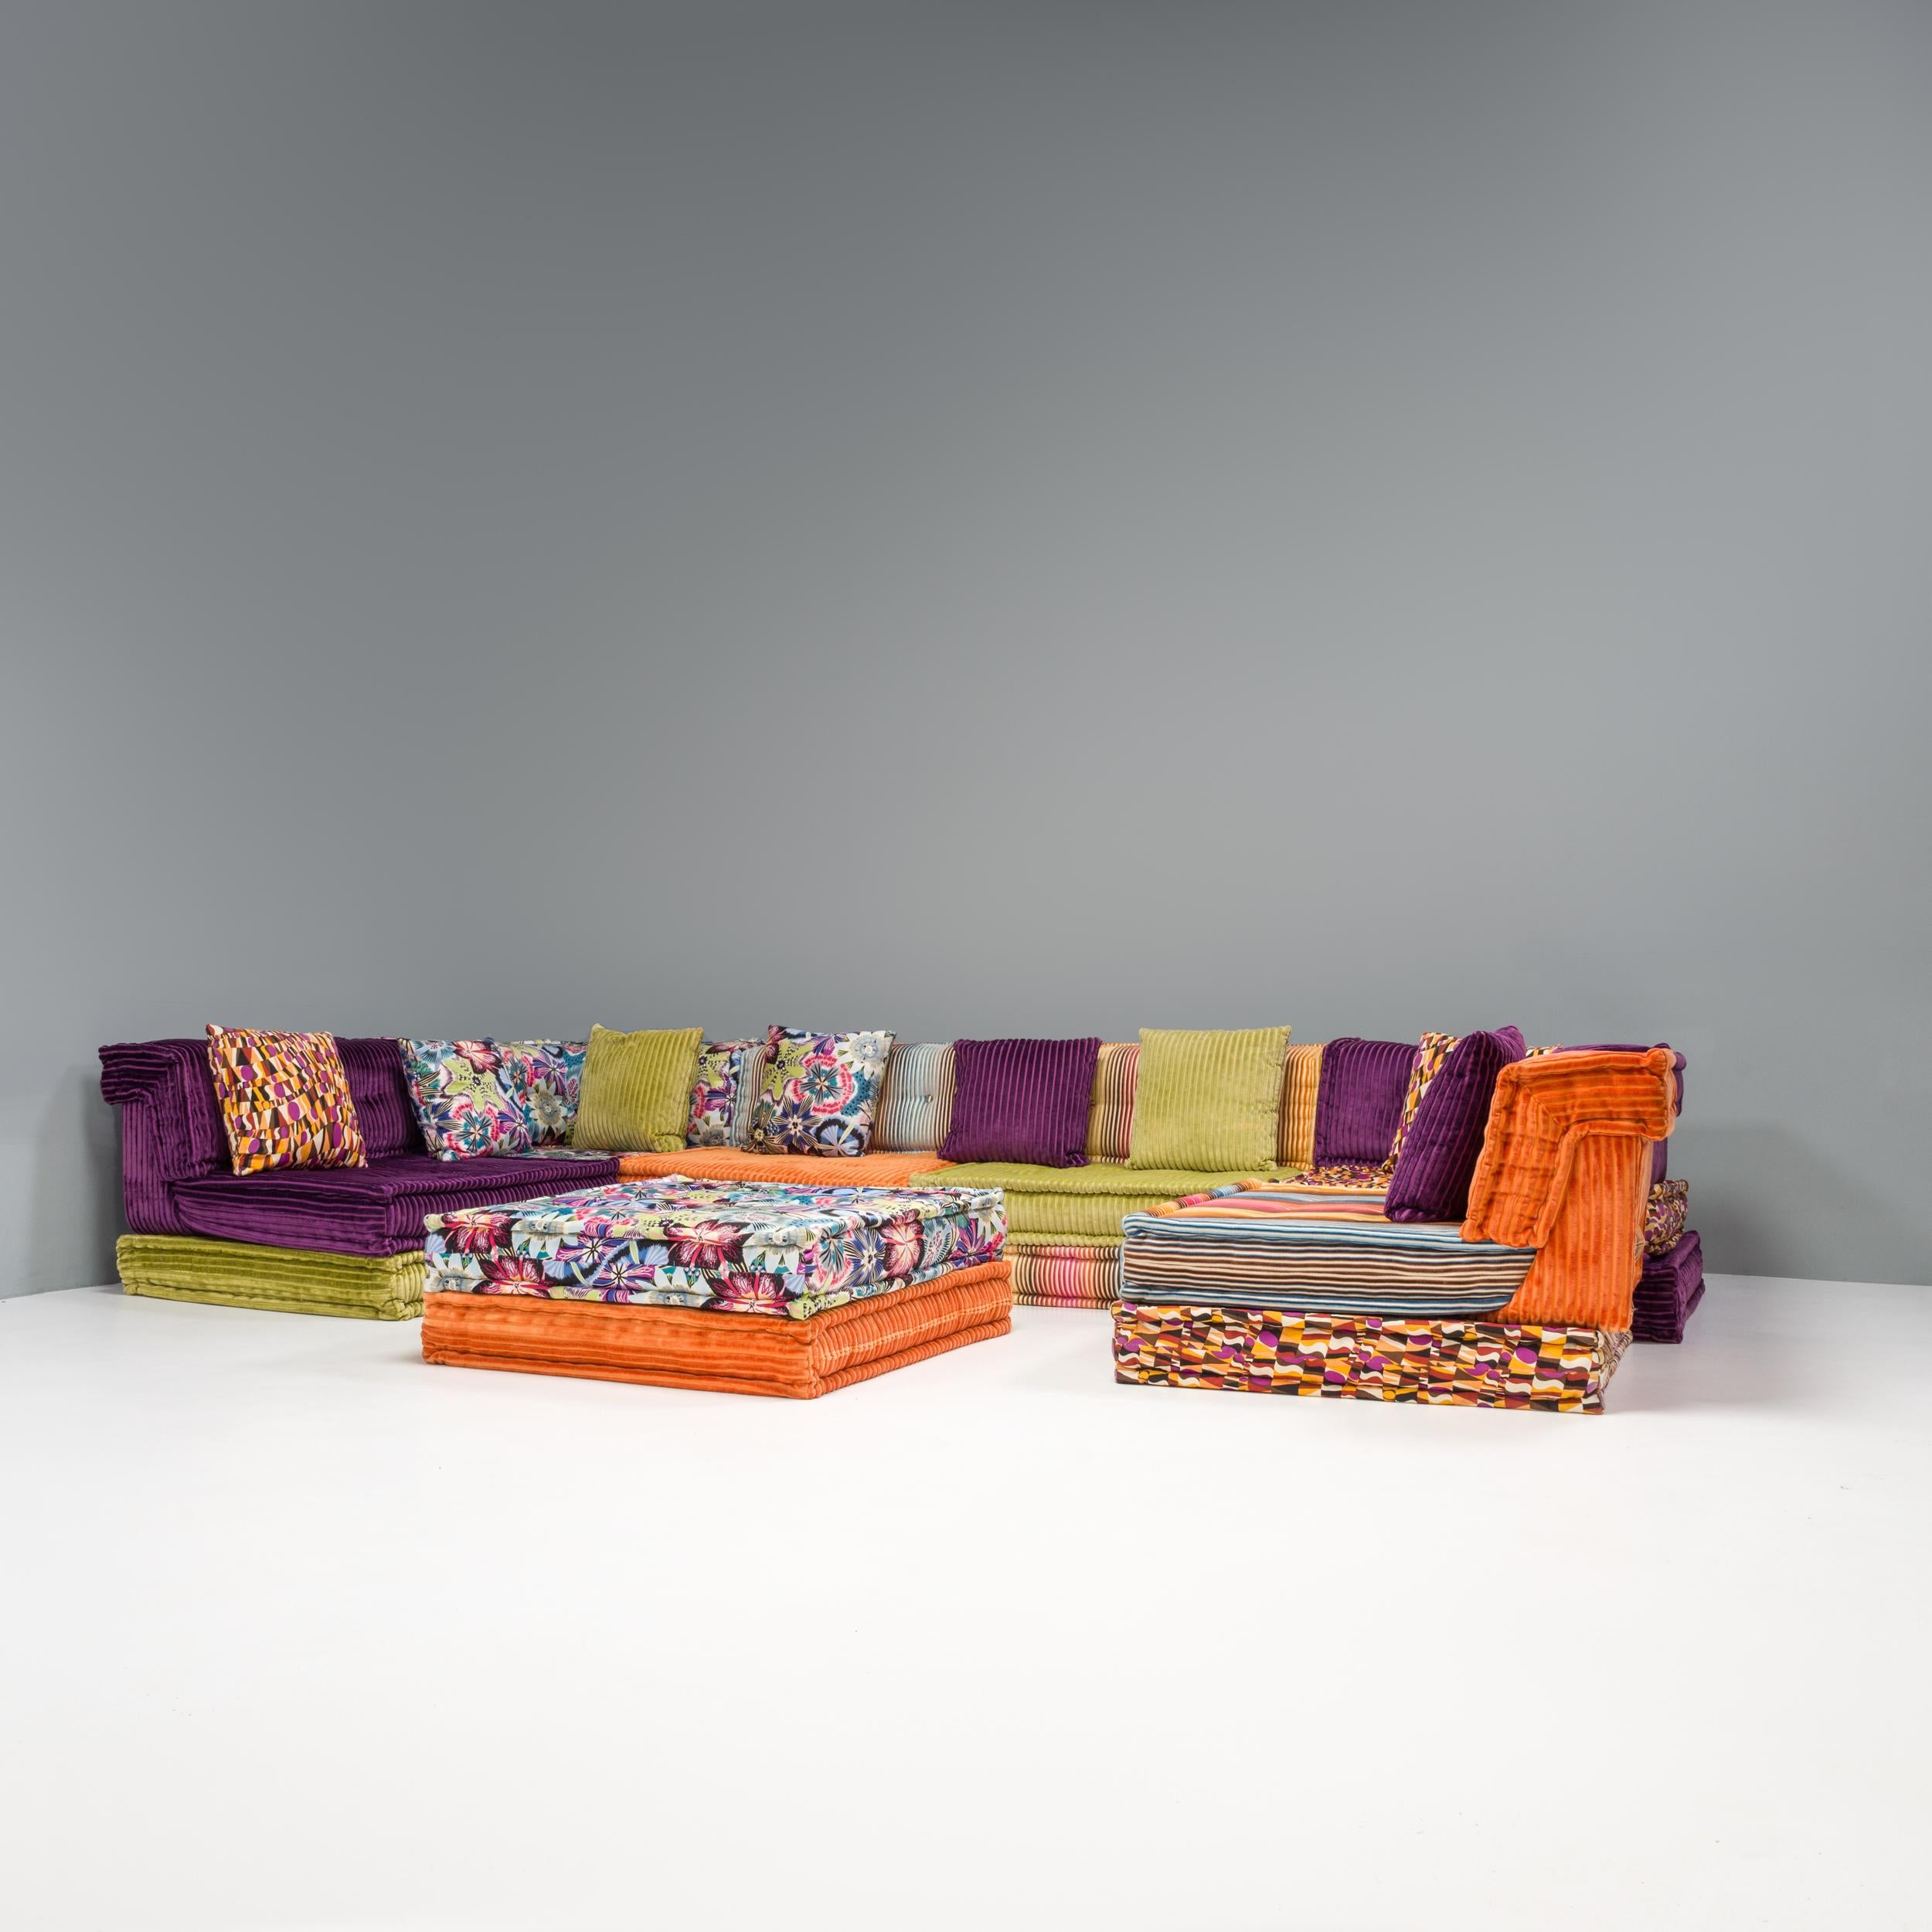 Conçu à l'origine par Hans Hopfer pour Roche Bobois en 1971, le canapé Mah Jong est devenu un classique du design.

Depuis sa conception originale, Roche Bobois a collaboré avec diverses maisons de design pour revêtir le canapé, faisant ainsi entrer